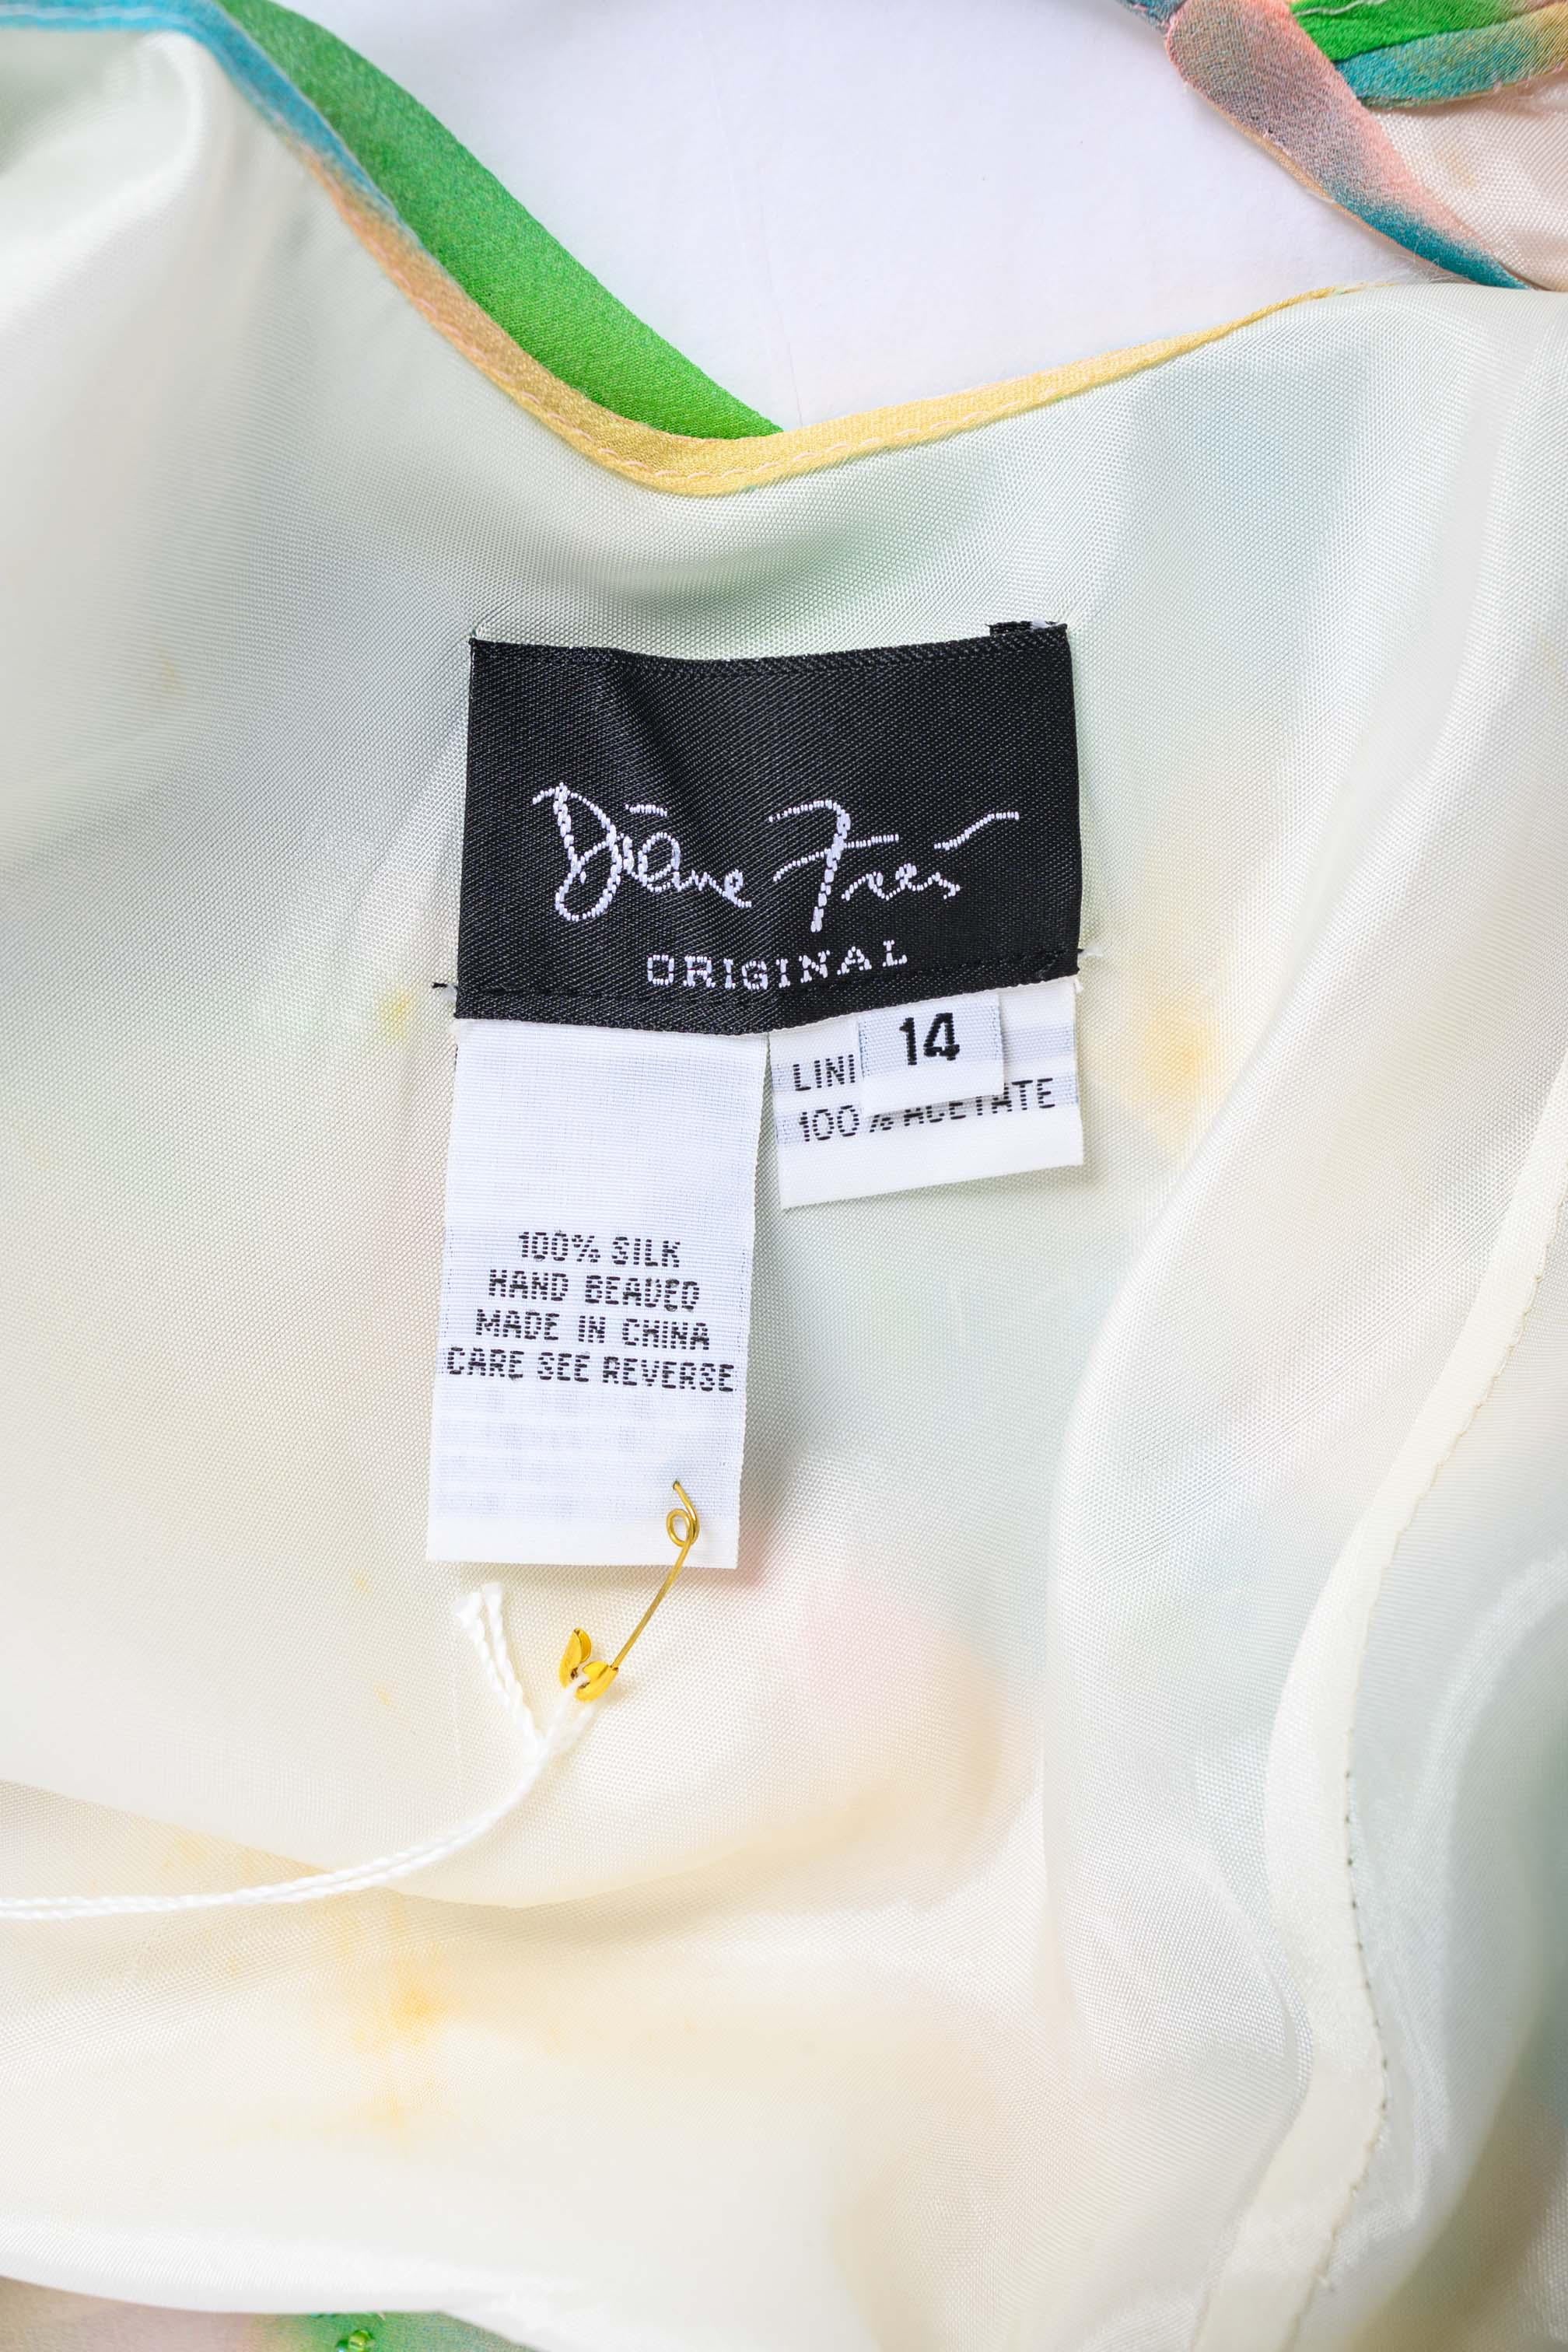 Confectionnée en soie luxueuse, cette robe vintage Diane Freis présente un col bénitier et des bretelles spaghetti ornées de volants, qui ajoutent une touche d'élégance au modèle. La robe présente un imprimé abstrait coloré, rehaussé d'un travail